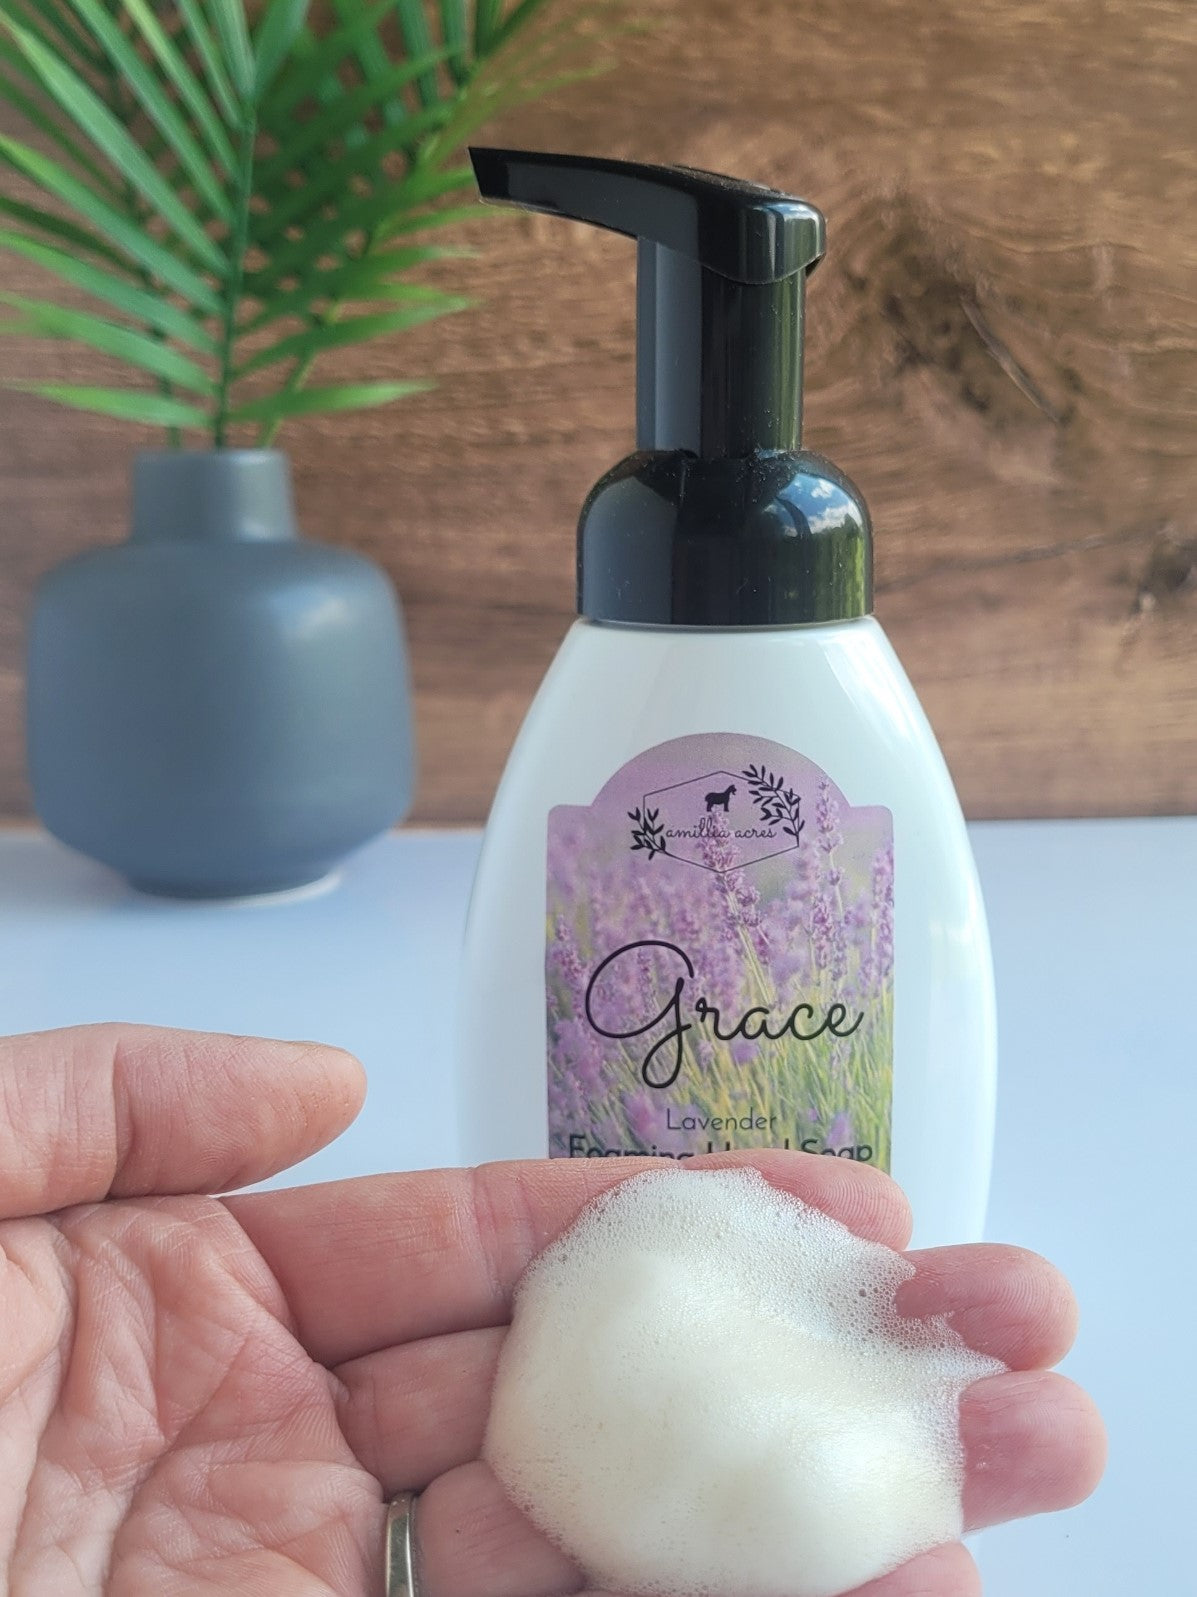 Grace Foaming Hand Soap